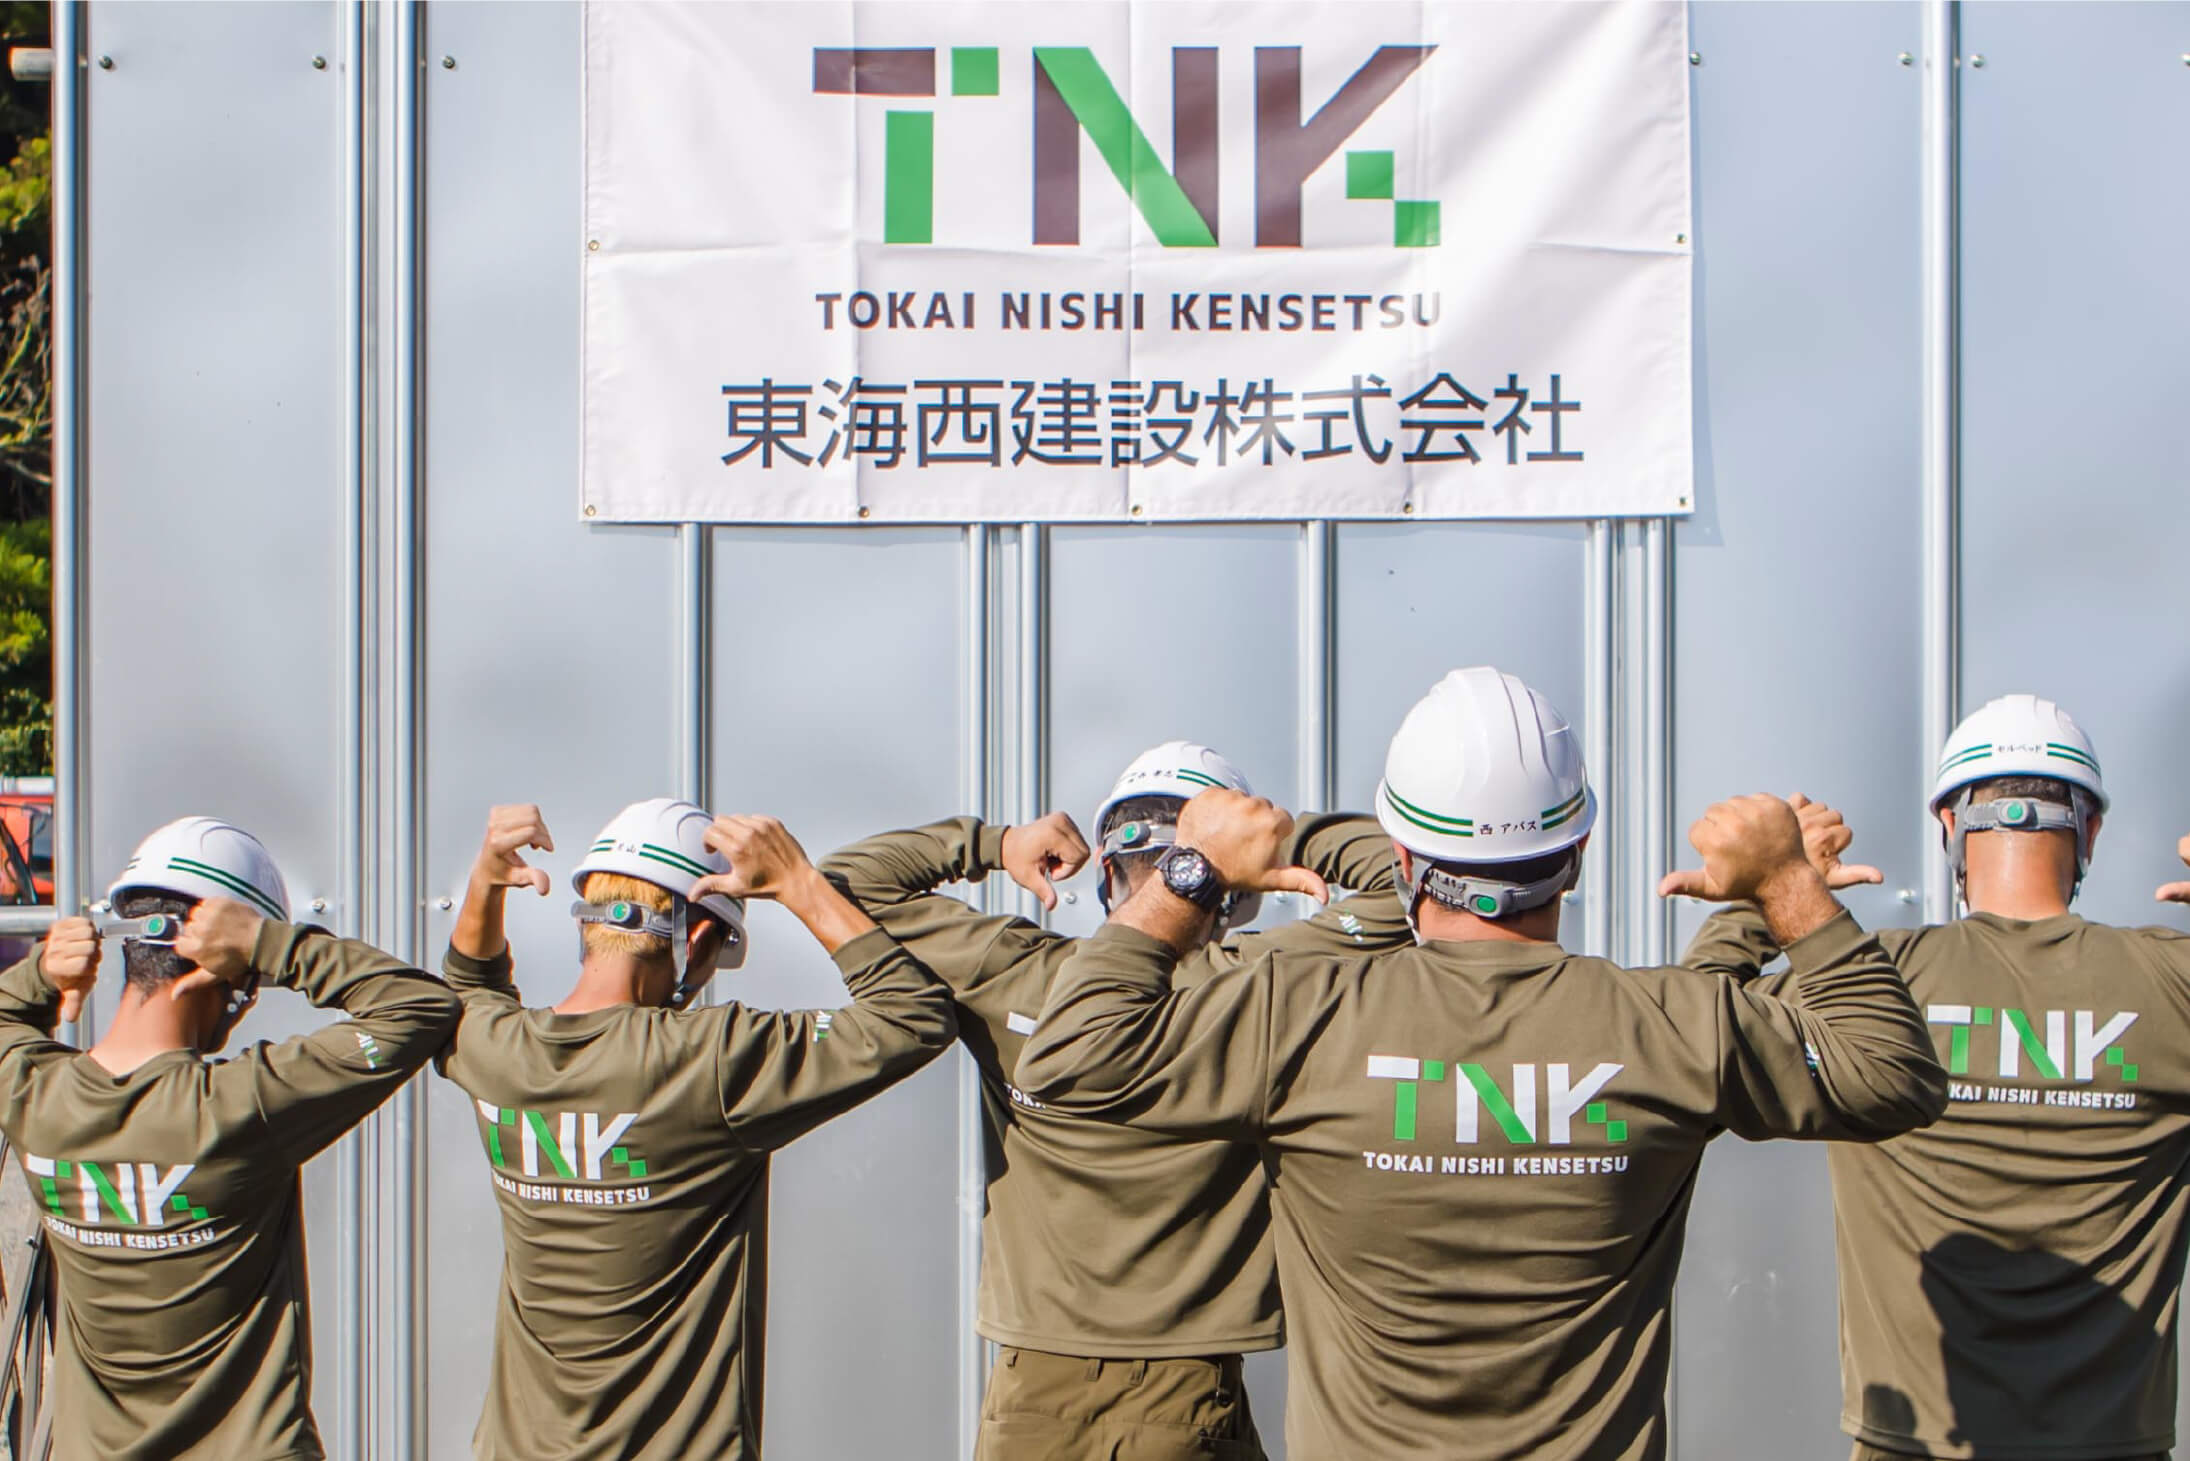 TNK TOKAI NISHI KENSETSU 東海西建設株式会社